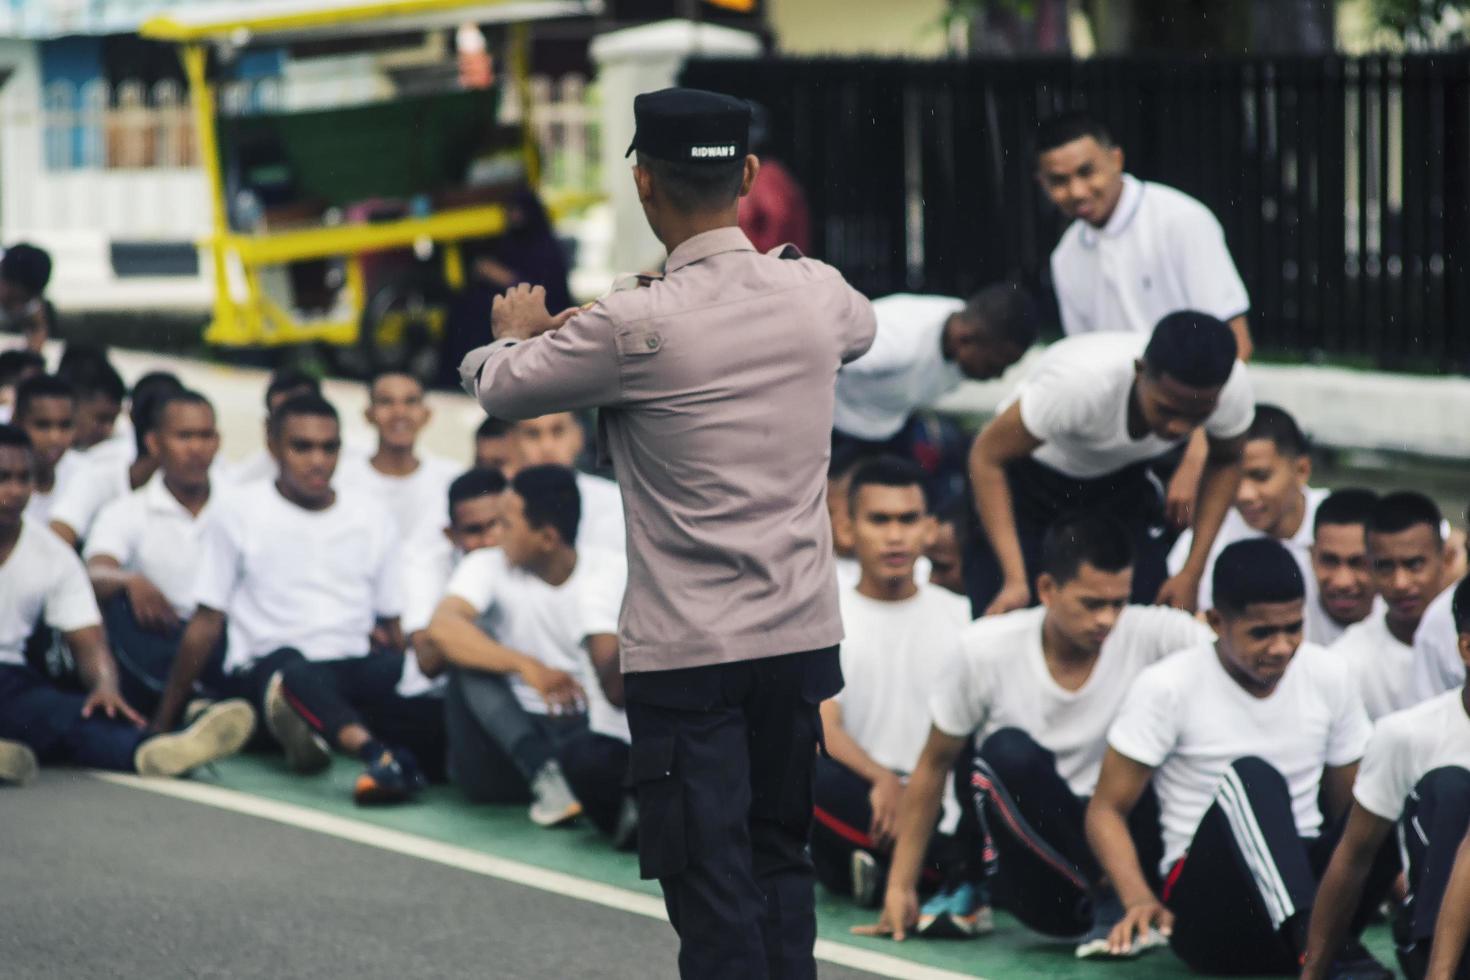 sorong, västra papua, indonesien 2021- indonesiska polisuppdragskandidater foto